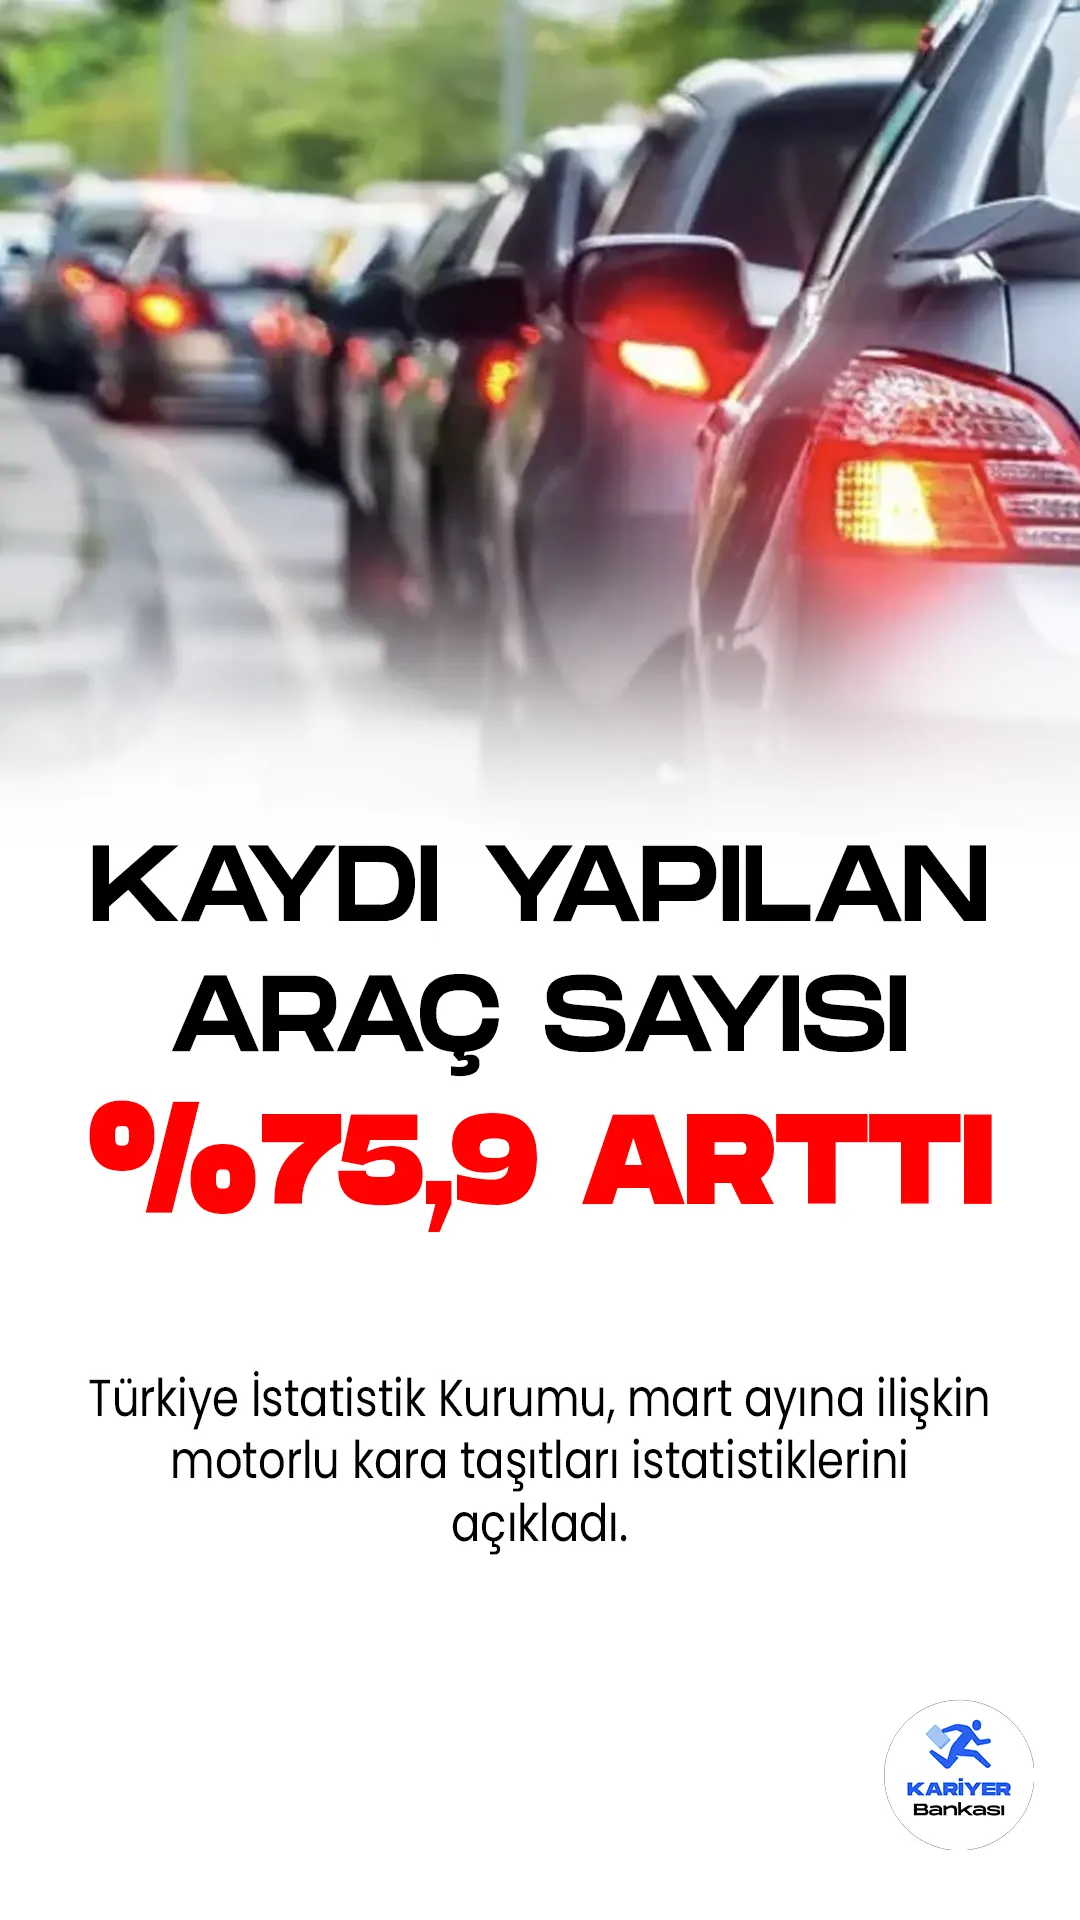 Türkiye İstatistik Kurumu, mart ayına ilişkin motorlu kara taşıtları istatistiklerini açıkladı. Bu dönemde trafiğe kaydı yapılan araç sayısı ve trafiğe kayıtlı toplam taşıt sayısı artış gösterdi.